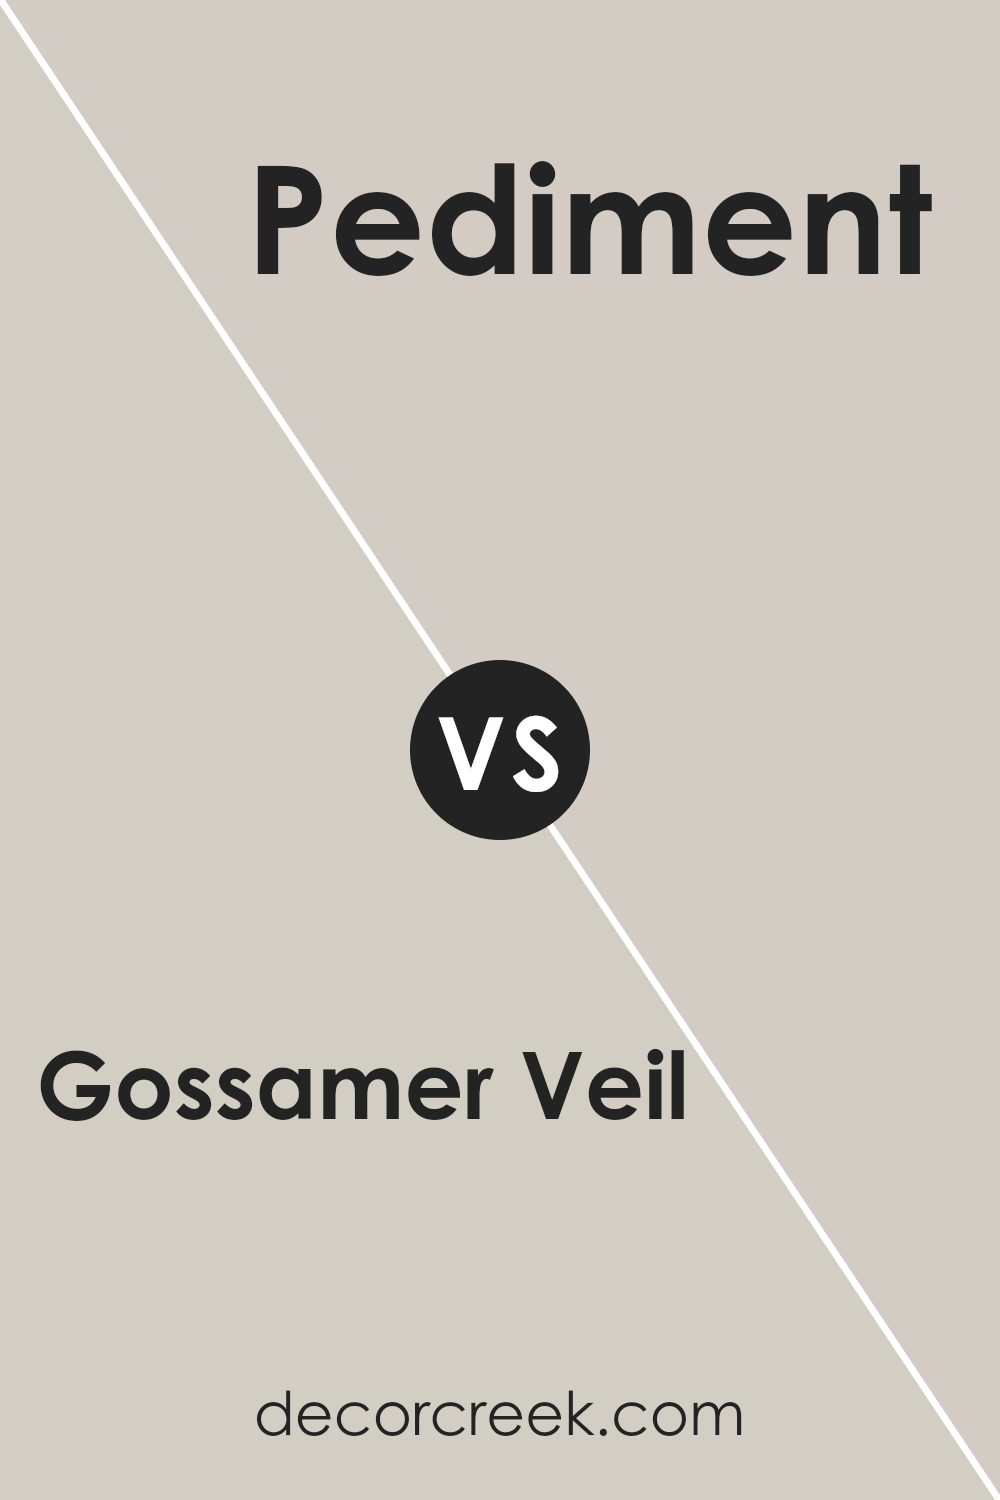 gossamer_veil_sw_9165_vs_pediment_sw_7634